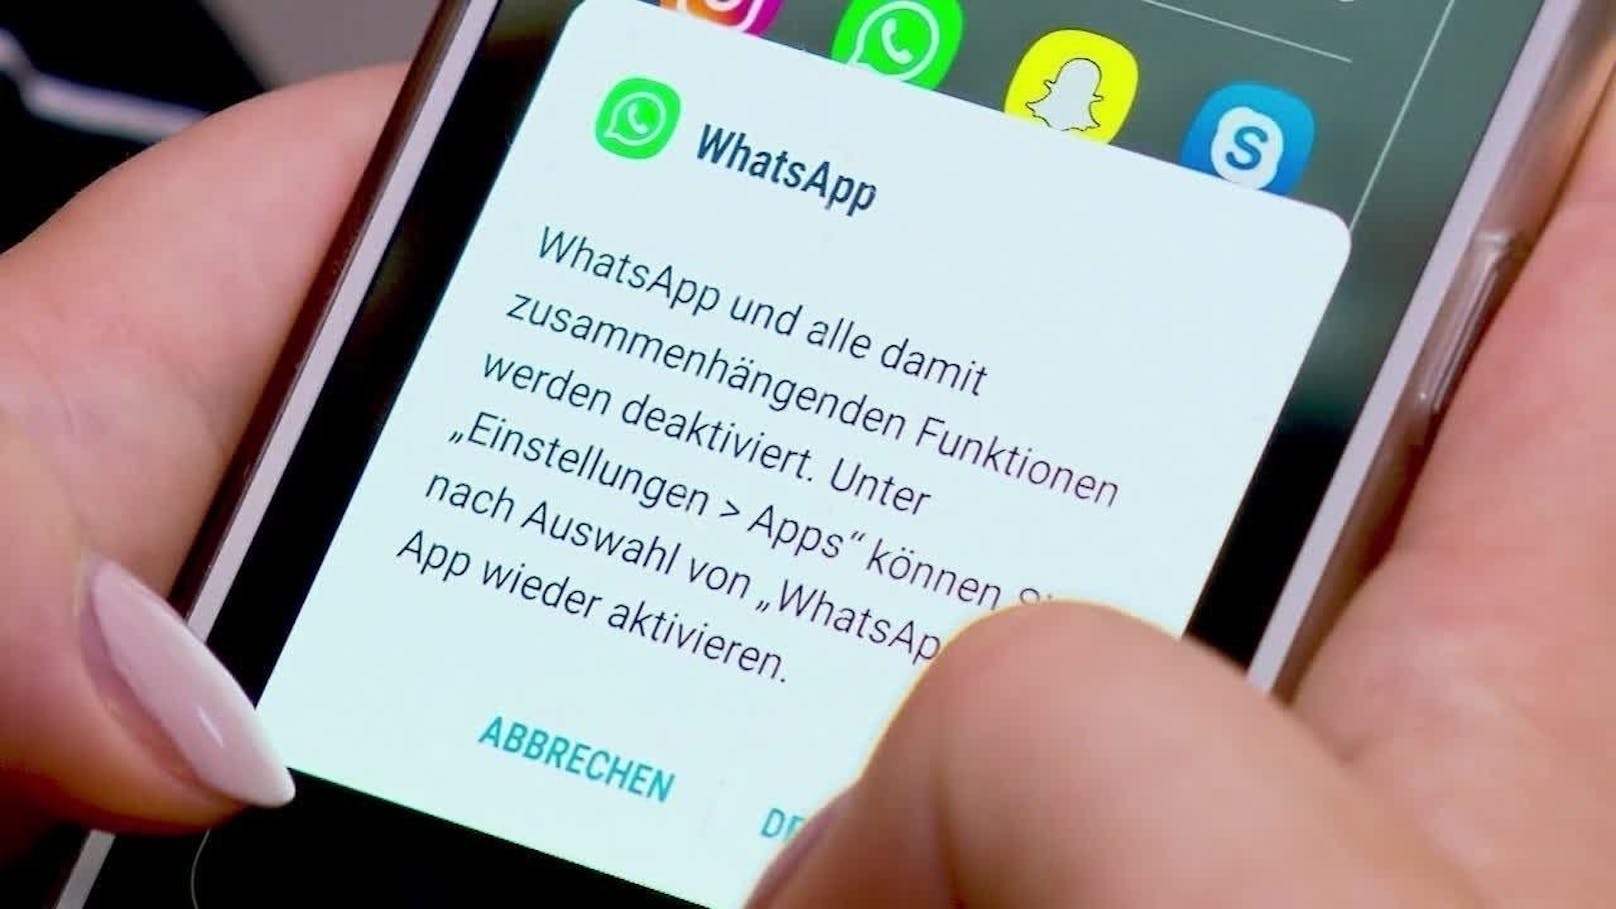 Whatsapp meldete im vergangenen Jahr sechsmal häufiger Sicherheitslücken als sonst.